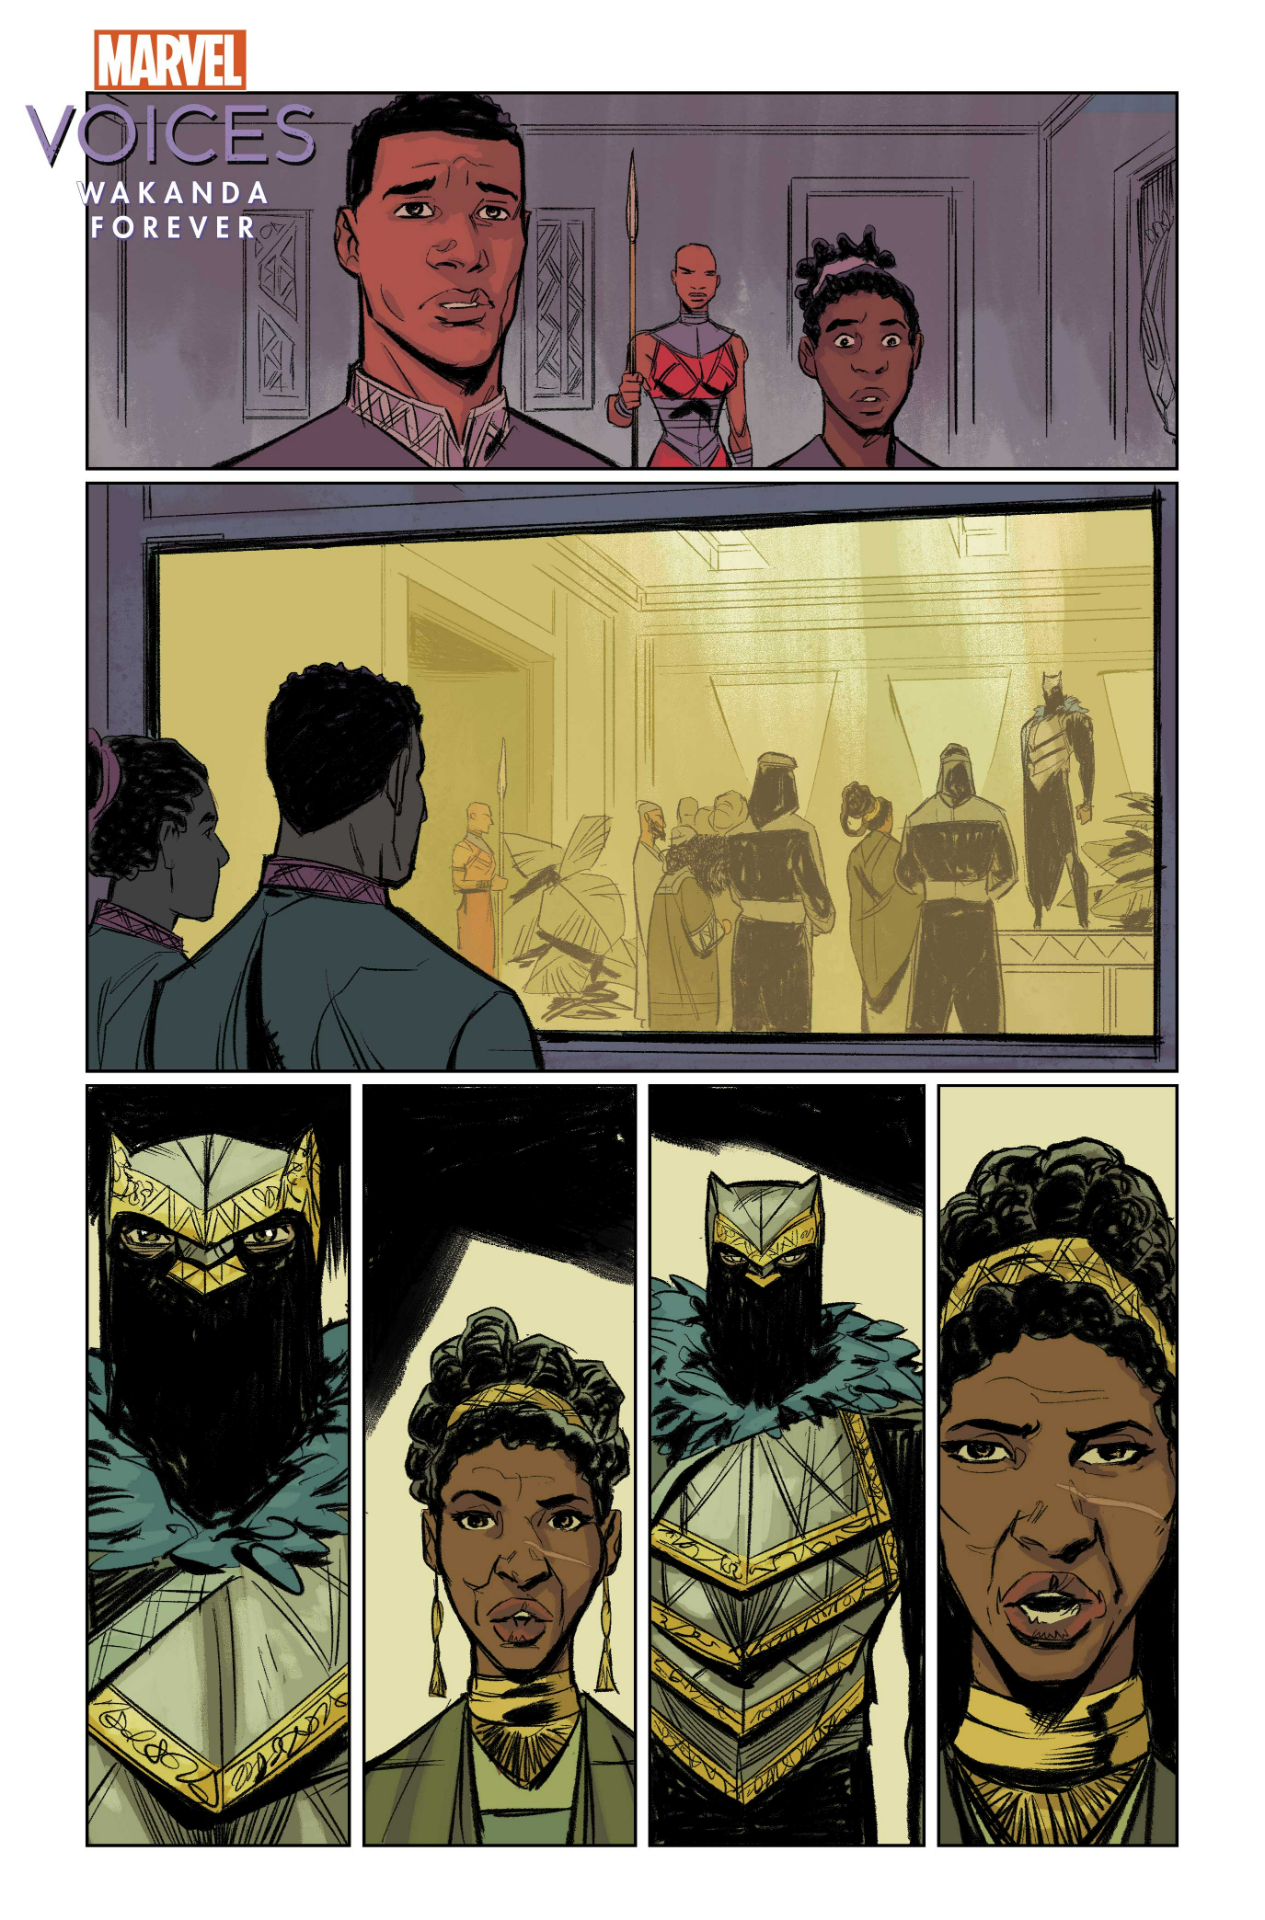 Marvel's Voices: Wakanda Forever #1 art